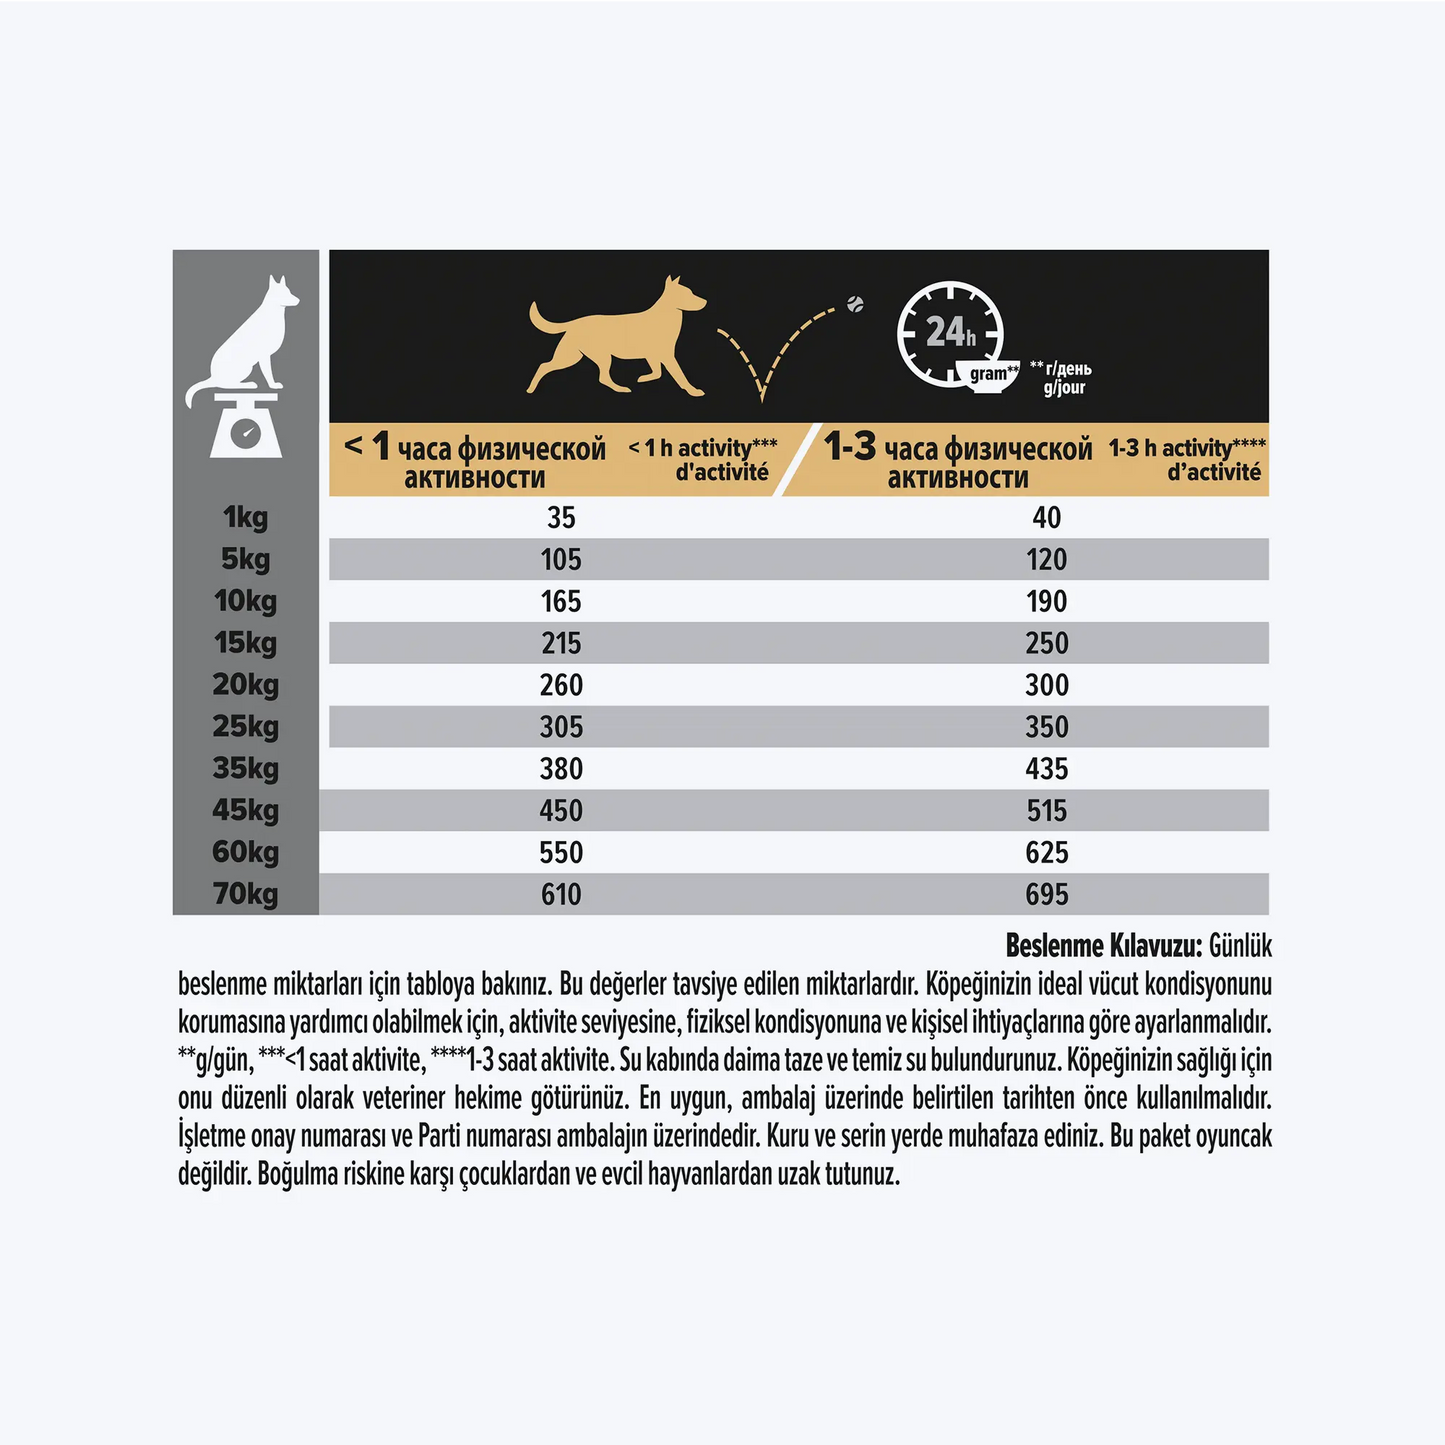 Pro Plan Adult Senstive Somonlu Yetişkin Köpek Maması 14 kg